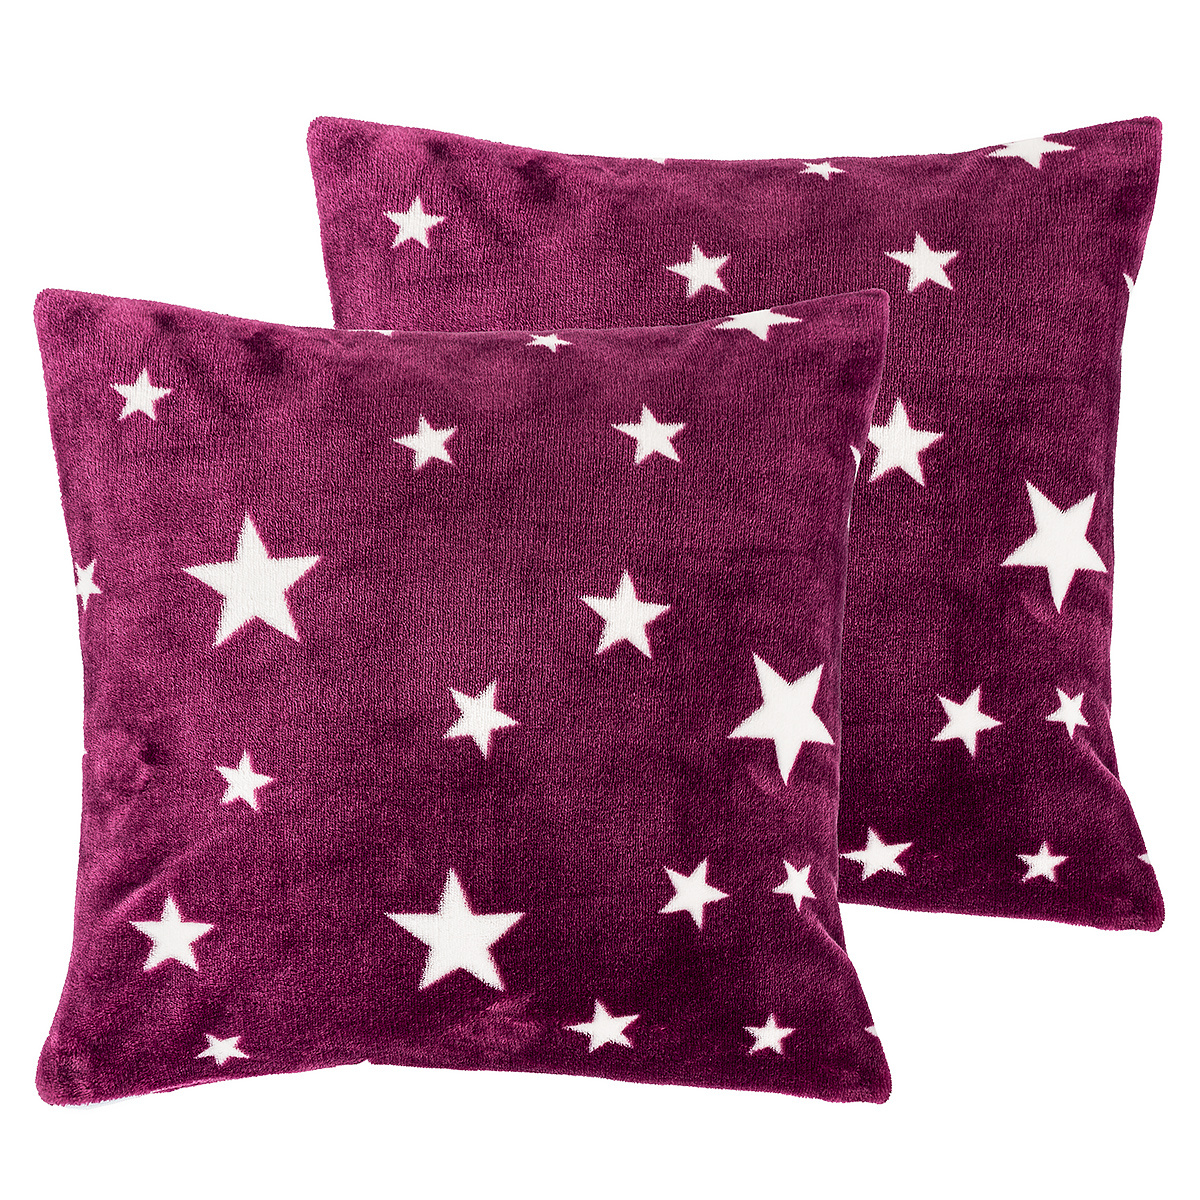 Față de pernă 4Home Stars violet, 40 x 40 cm, set 2 buc. 4Home